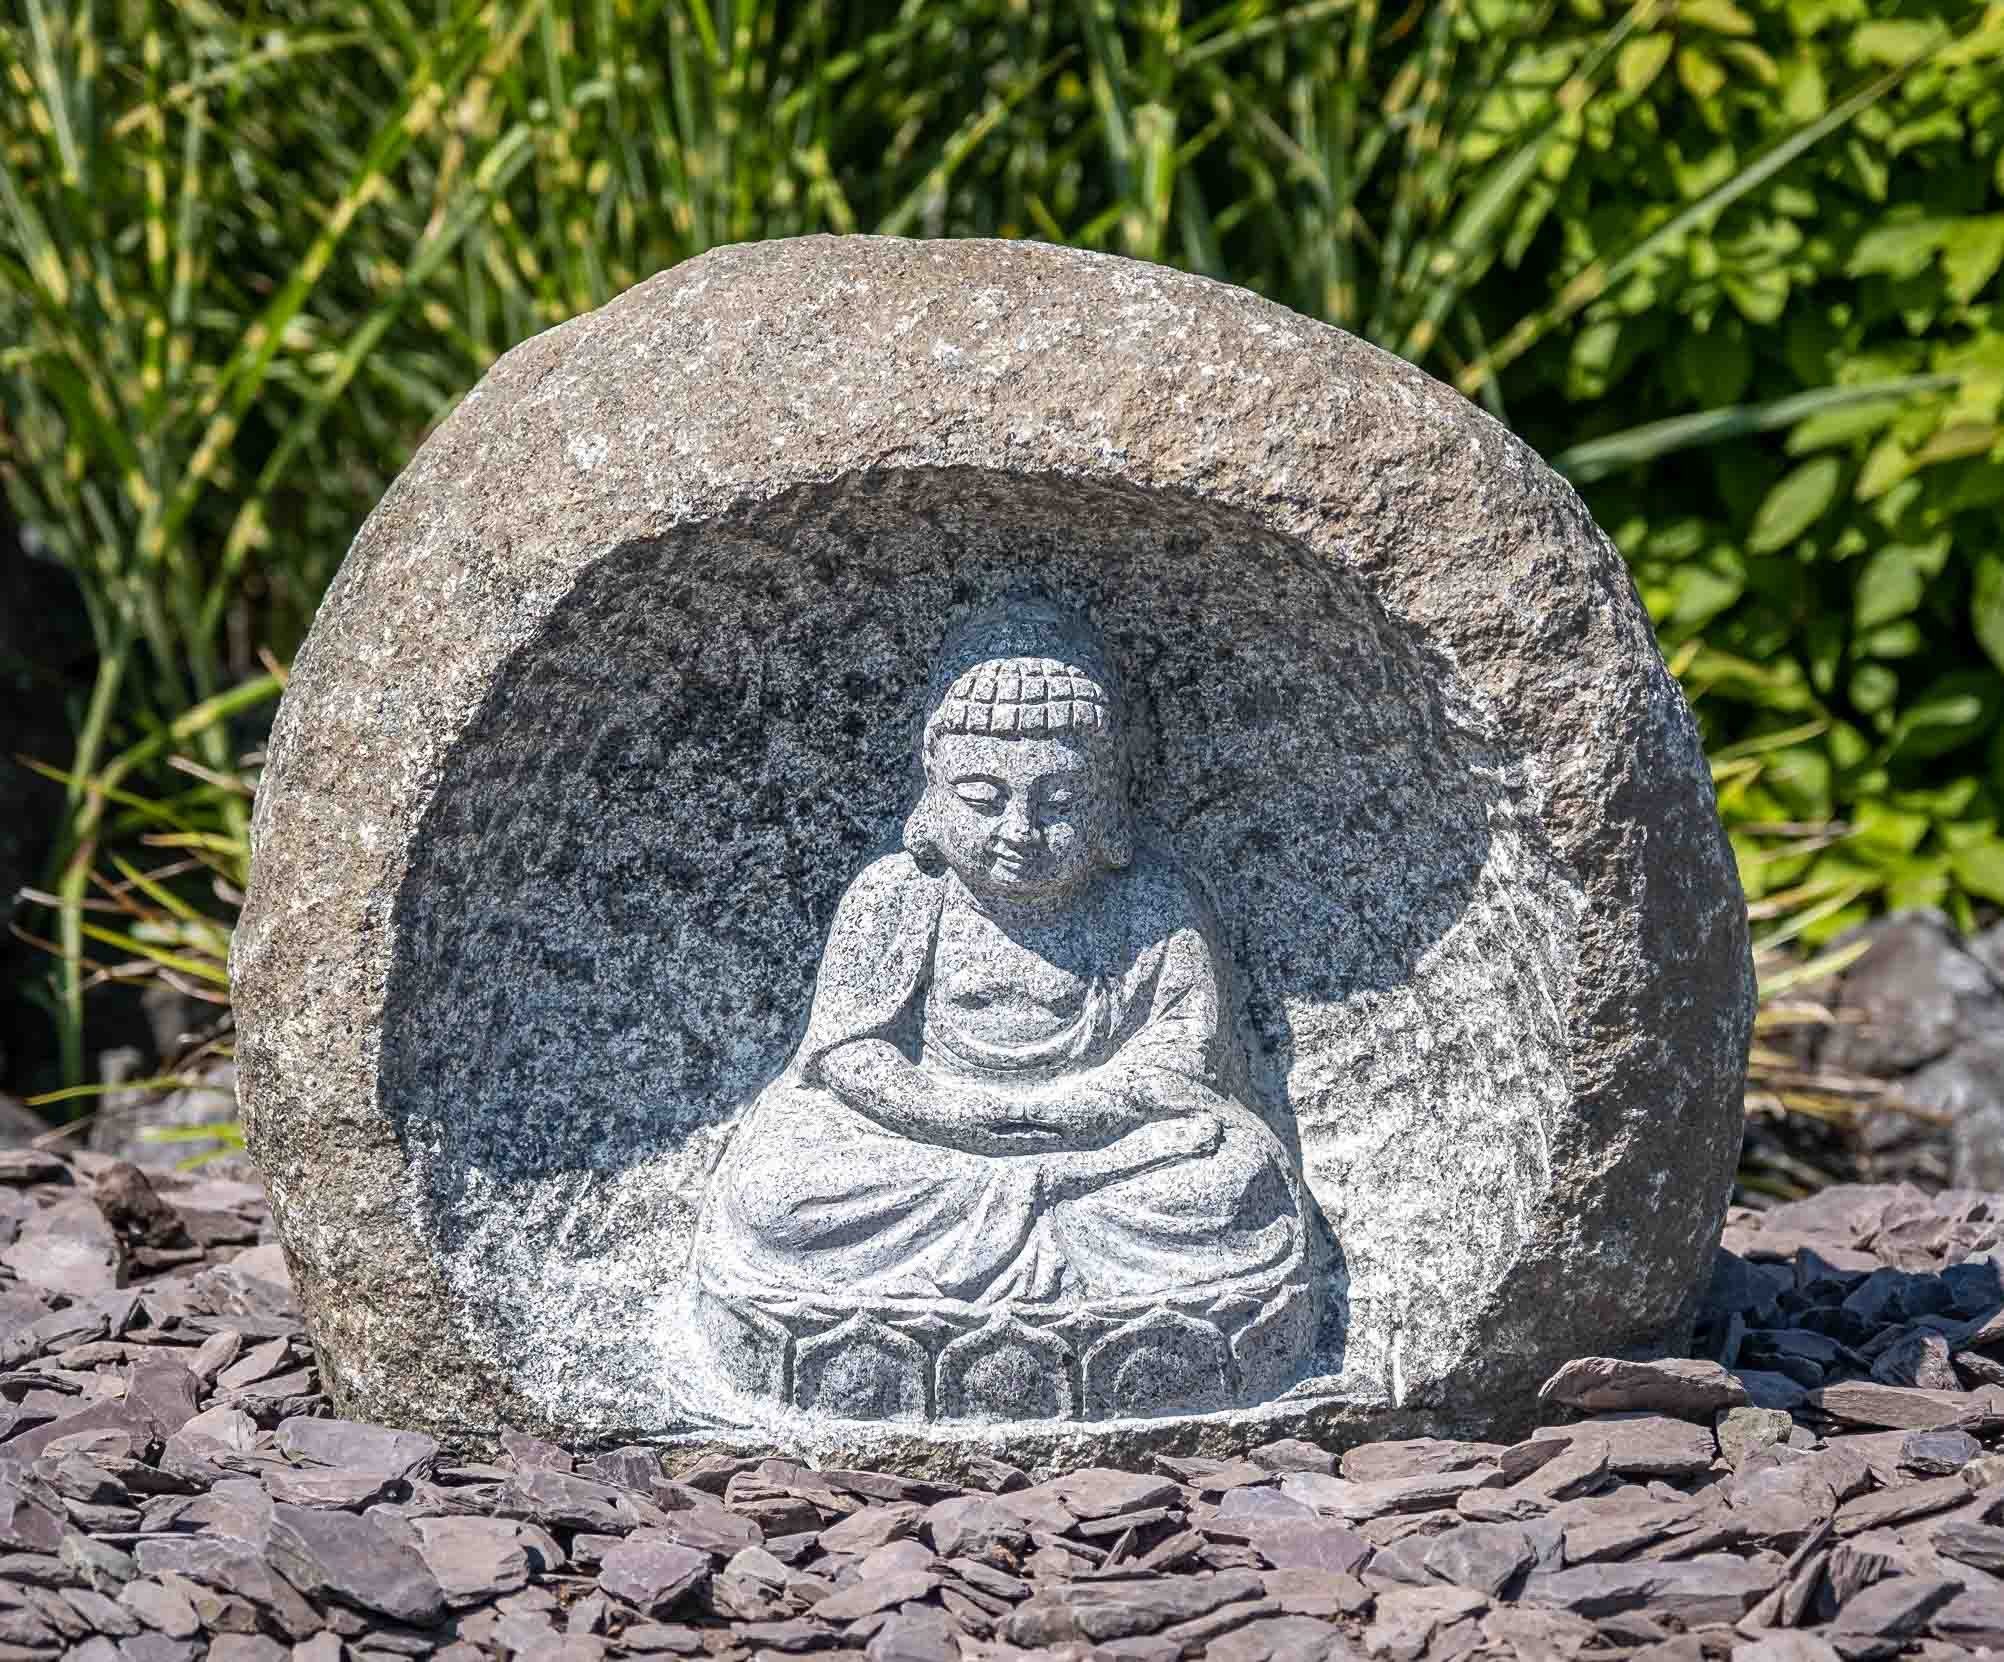 IDYL Gartenfigur Granitstein mit Buddha-Motiv, Granitstein – ein Naturprodukt sehr robust – witterungsbeständig gegen Frost, Regen und UV-Strahlung.